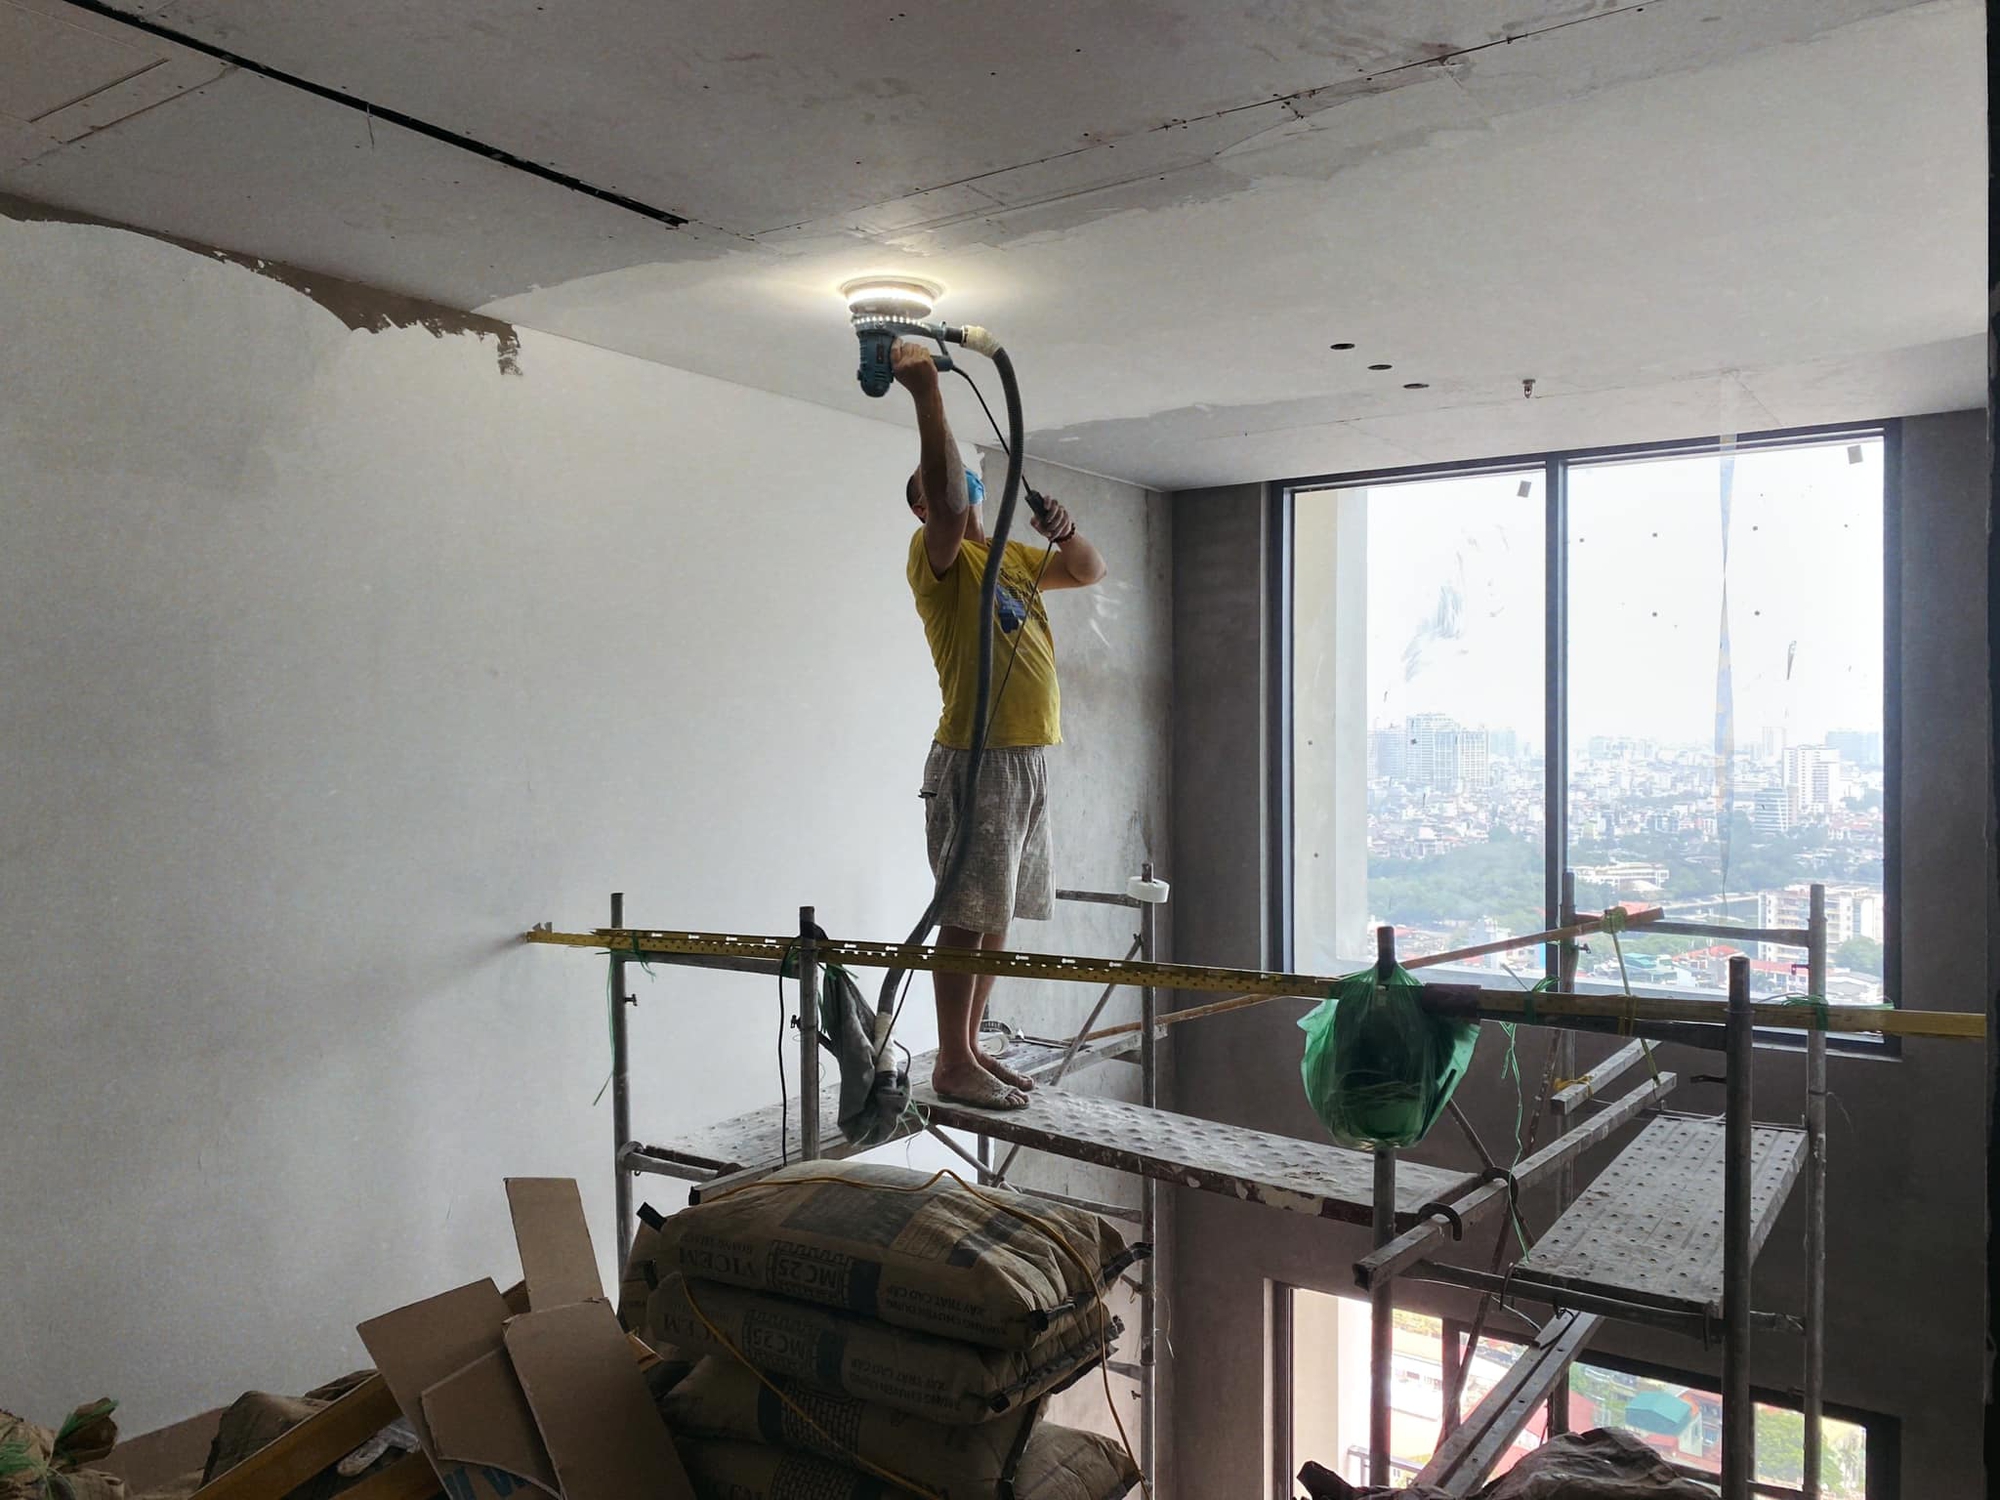 Căn hộ rộng 150m2 của cô gái 9x ở Hà Nội: "Thiết kế nhà đẹp để có cảm hứng hơn trong công việc và tận hưởng cuộc sống"